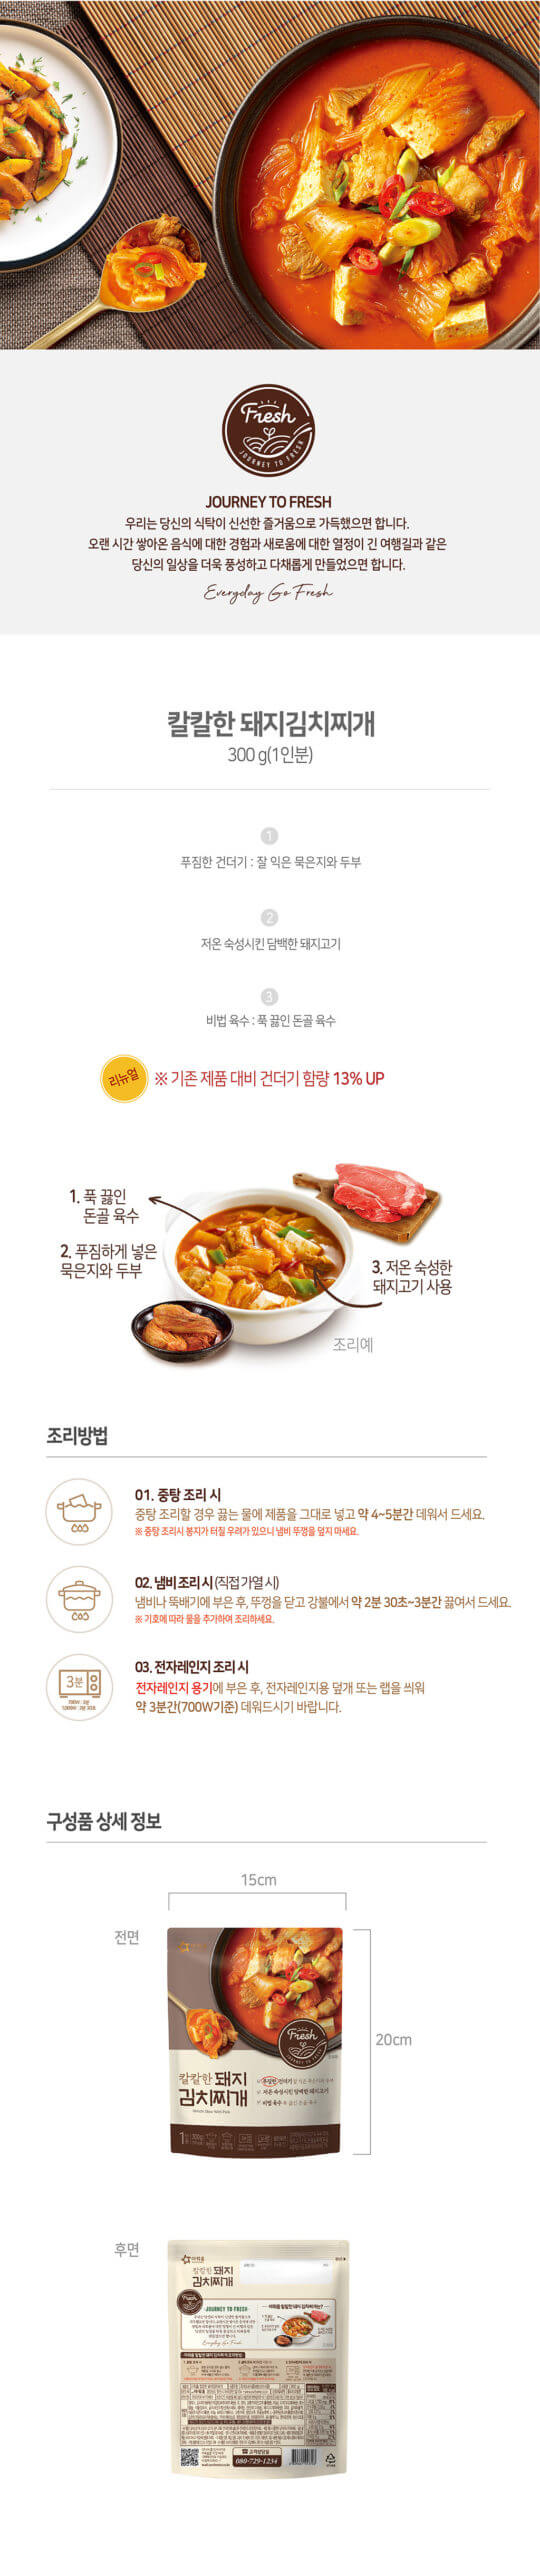 韓國食品-[아워홈] 칼칼한 돼지 김치찌개 300g